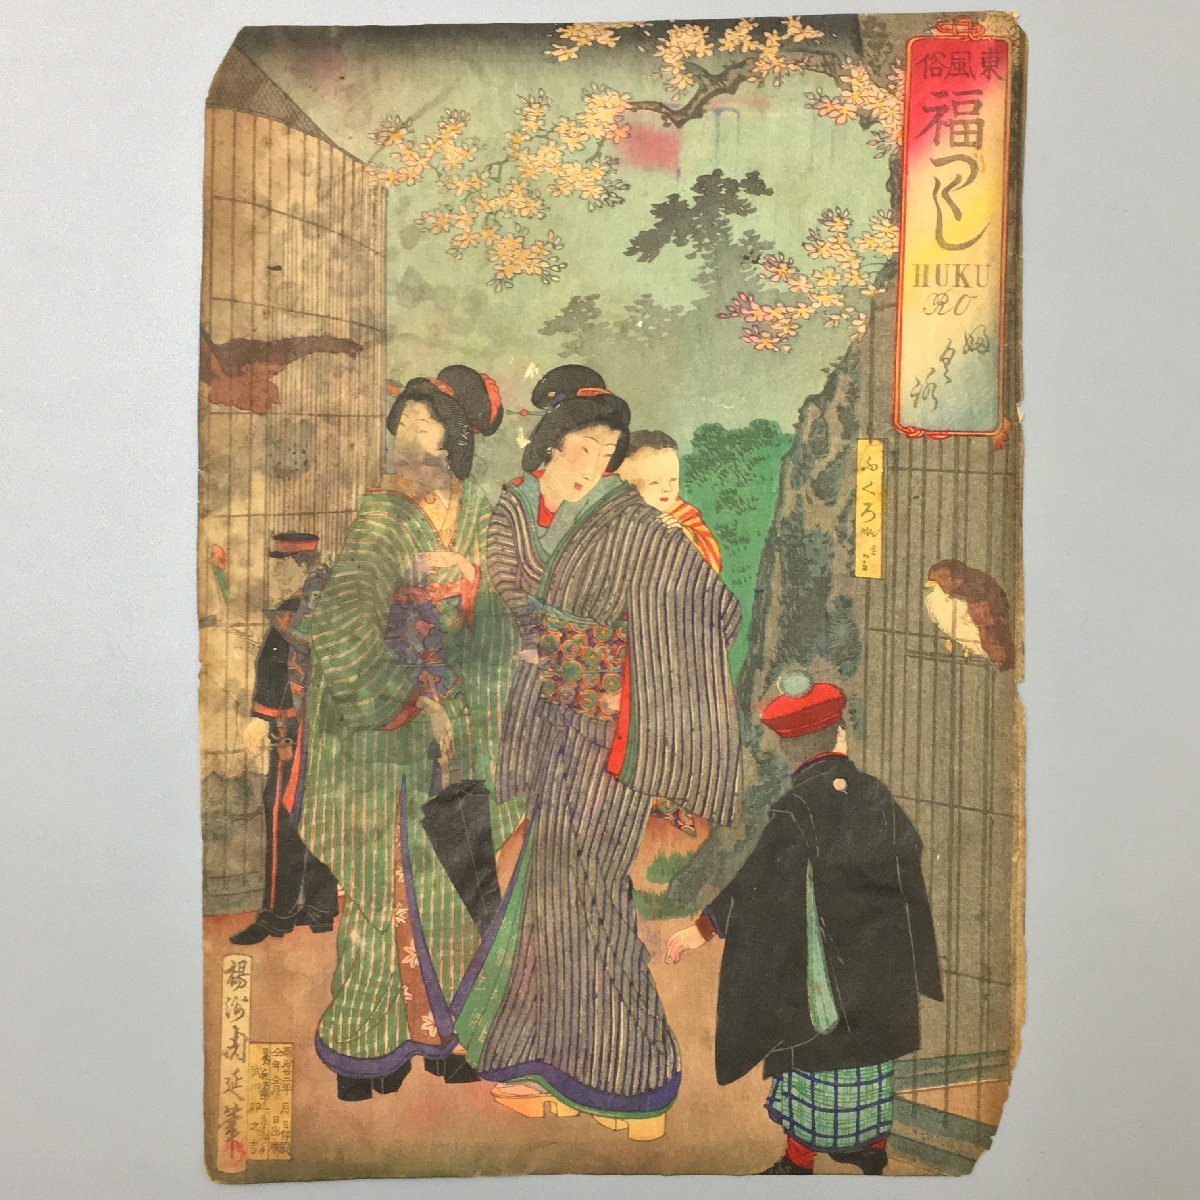 يانغشو شونوبو, الجمارك الشرقية, ذيل الحصان المحظوظ, بُومَة, هوكورو. أصلي, فترة ميجي (1922), لوحة امرأة جميلة, أوكييو إي, الطباعة على الخشب, حجم كبير, نيشيكي إي, ذيل الحصان المحظوظ, بُومَة, تلوين, أوكييو إي, مطبعة, آحرون